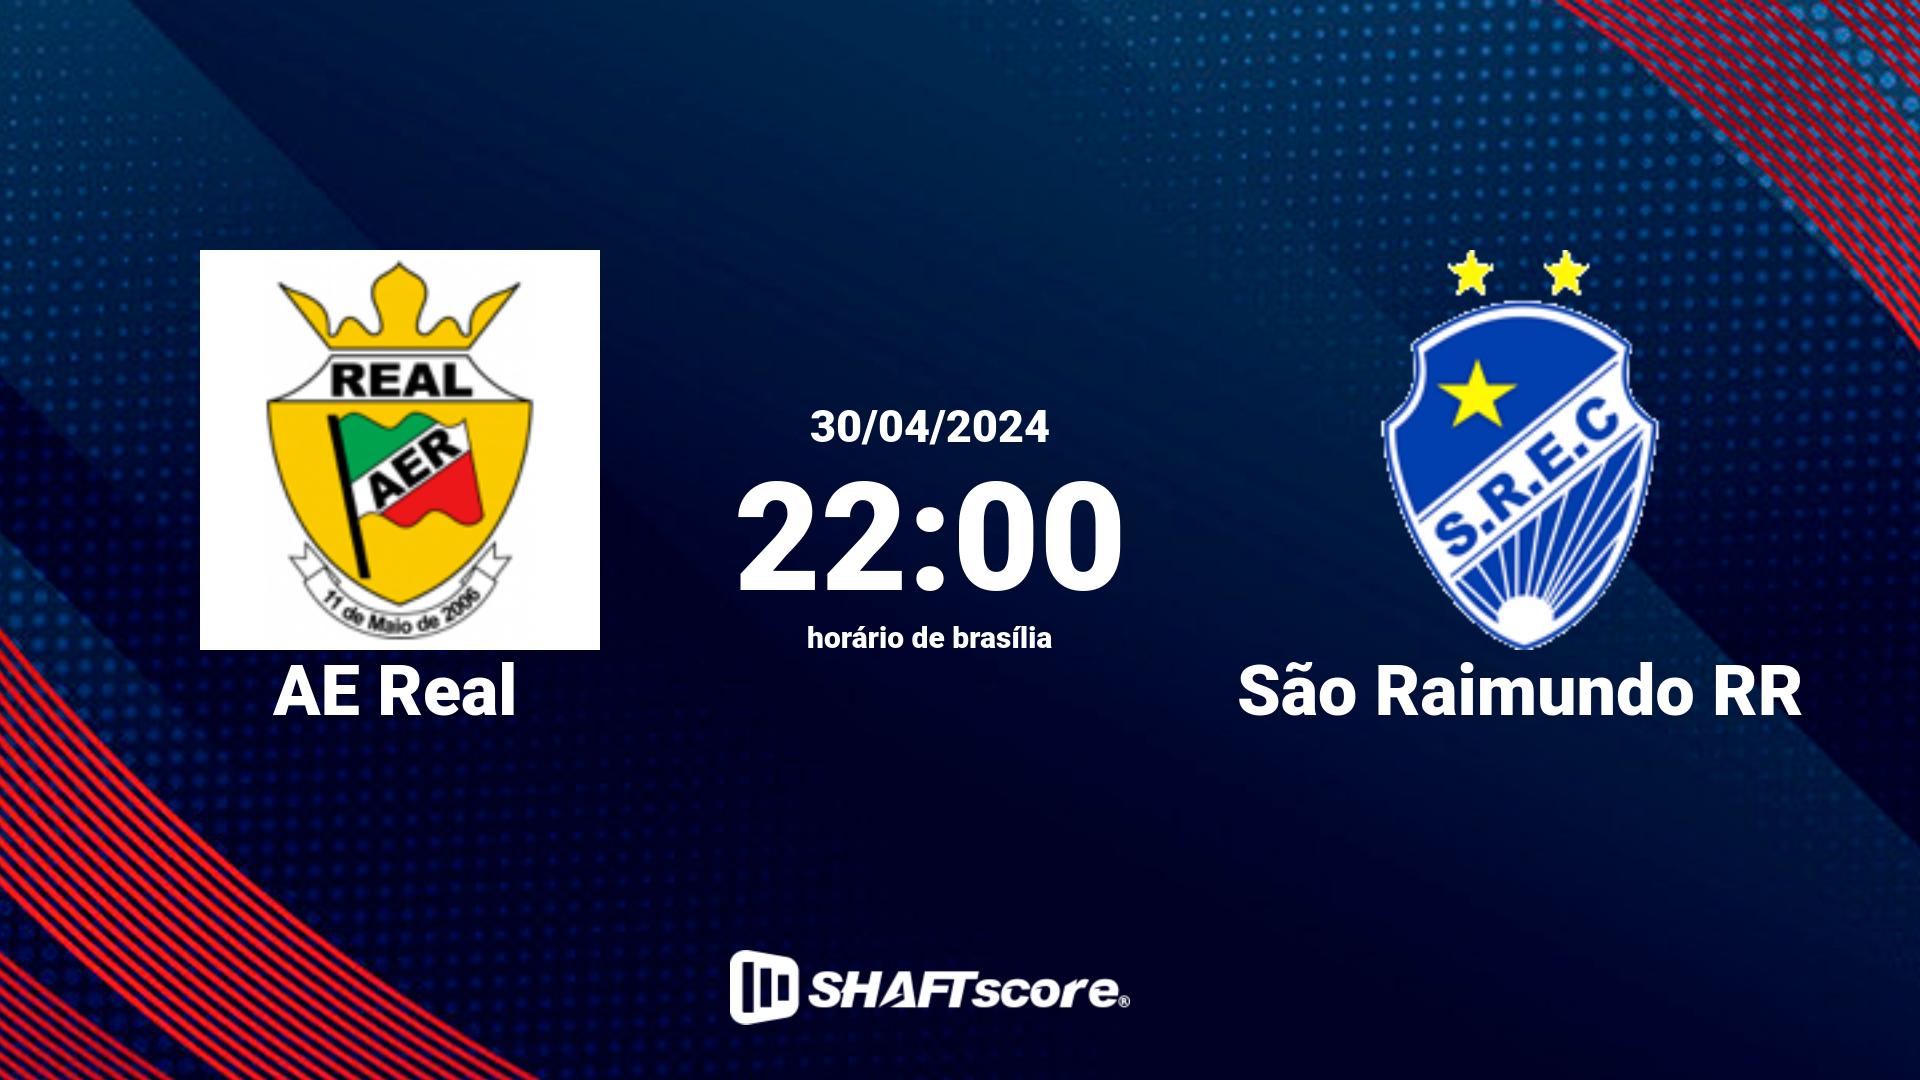 Estatísticas do jogo AE Real vs São Raimundo RR 30.04 22:00